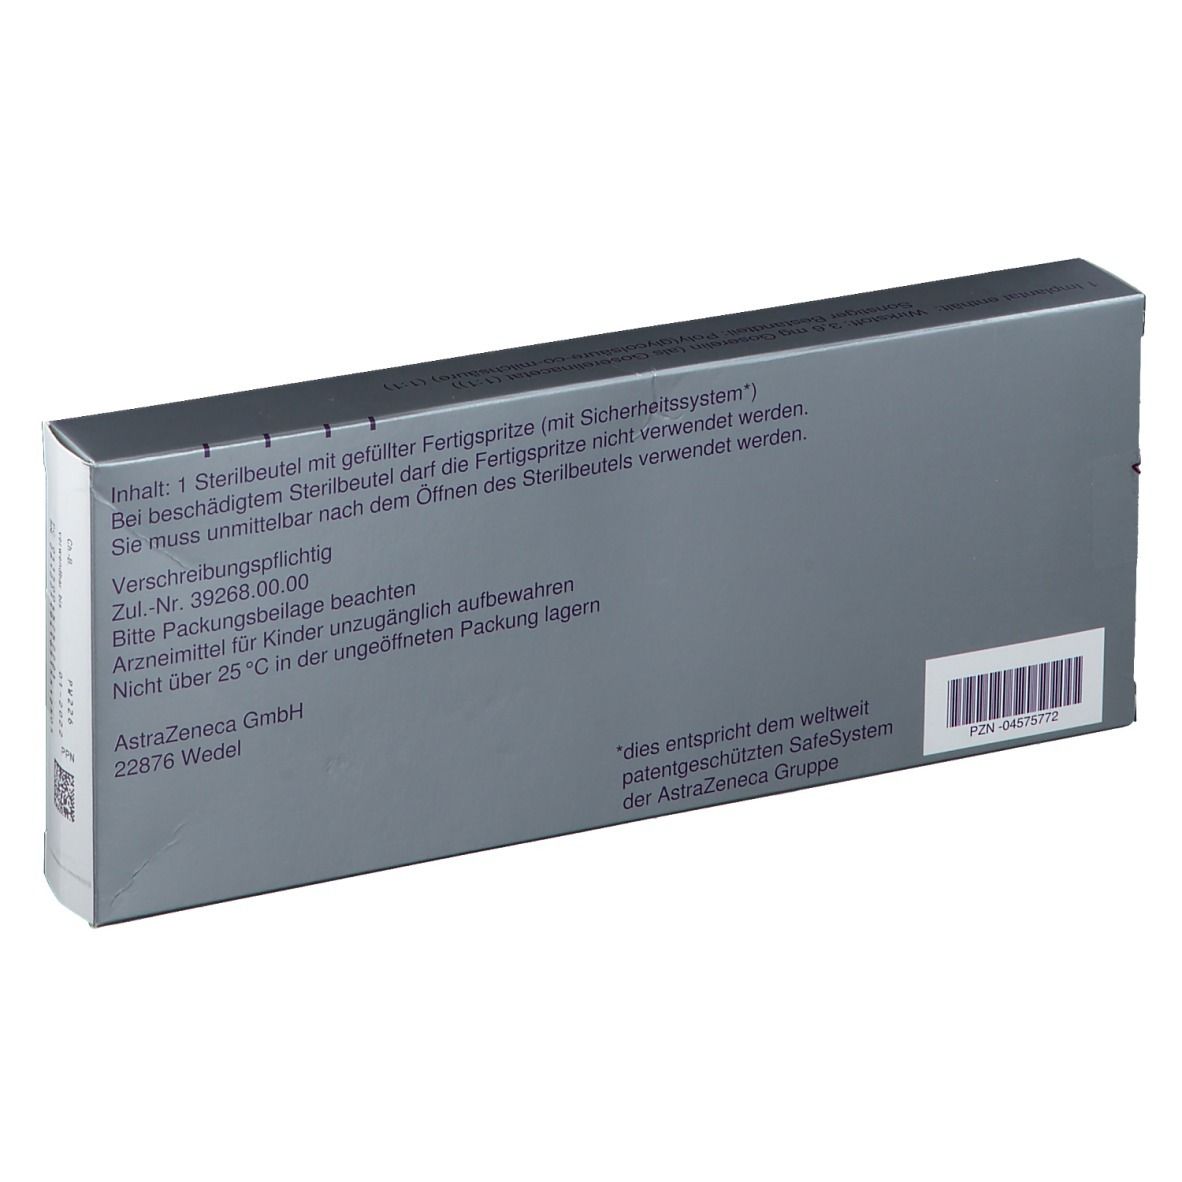 Zoladex® Gyn  3,6 mg